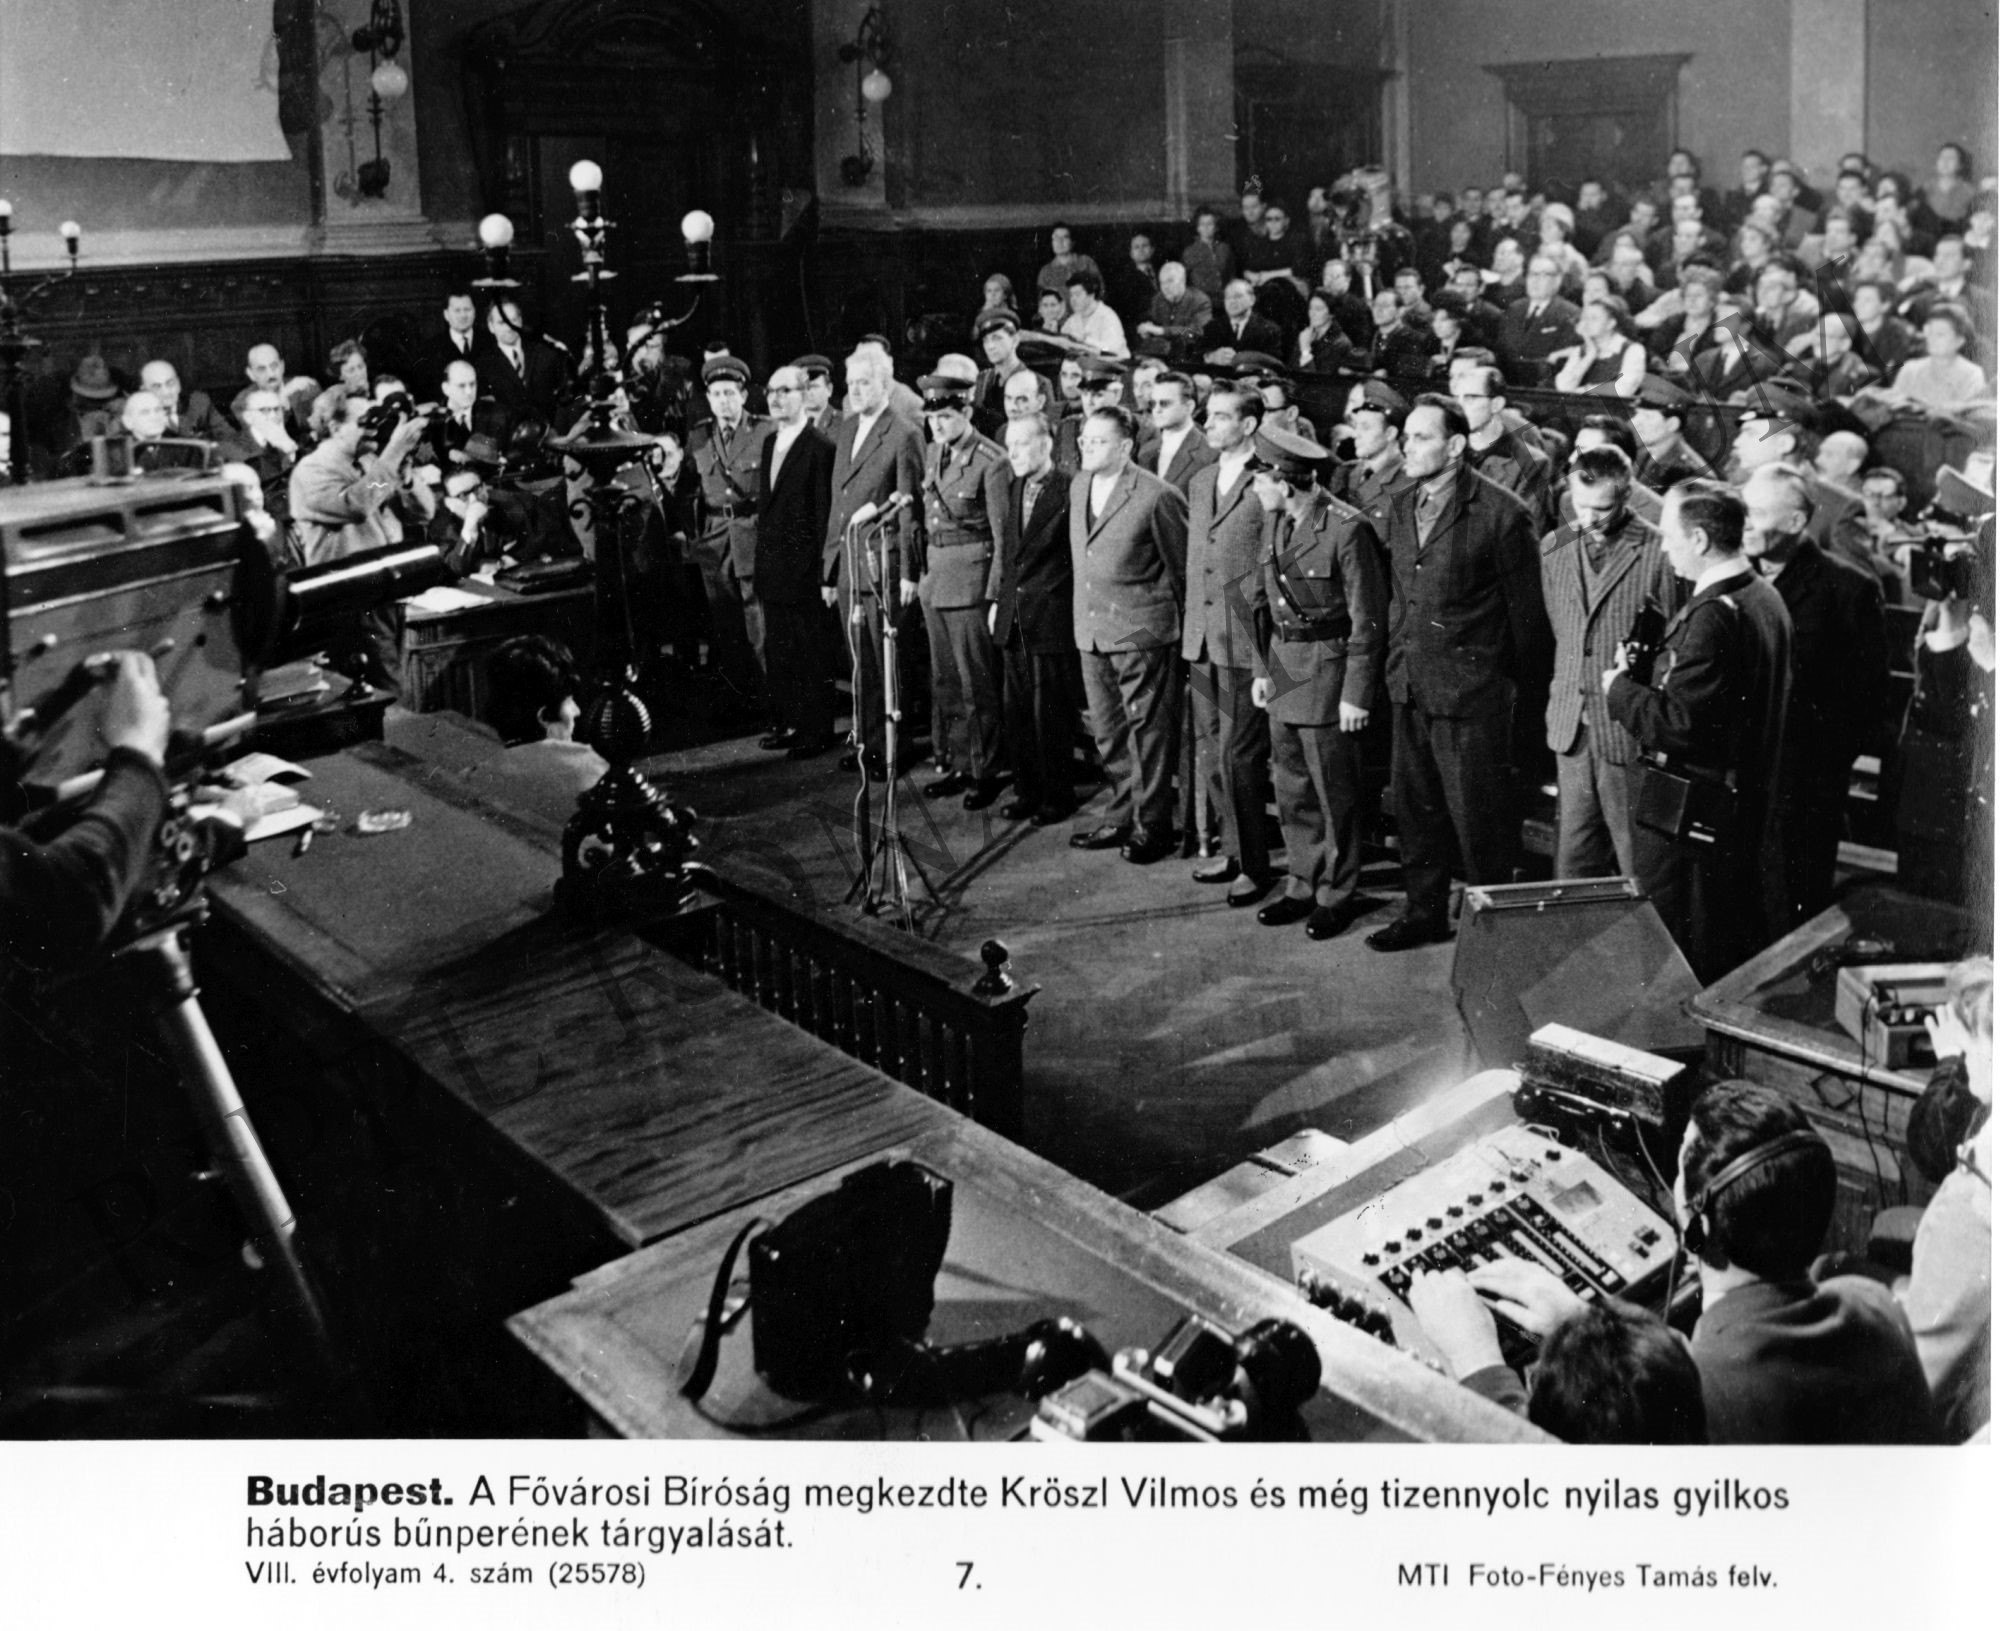 A Fővárosi Bíróság megkezdte Kröszl Vilmos és további 18 nyilas gyilkos háborús bűnperének tárgyalását (Rippl-Rónai Múzeum CC BY-NC-SA)